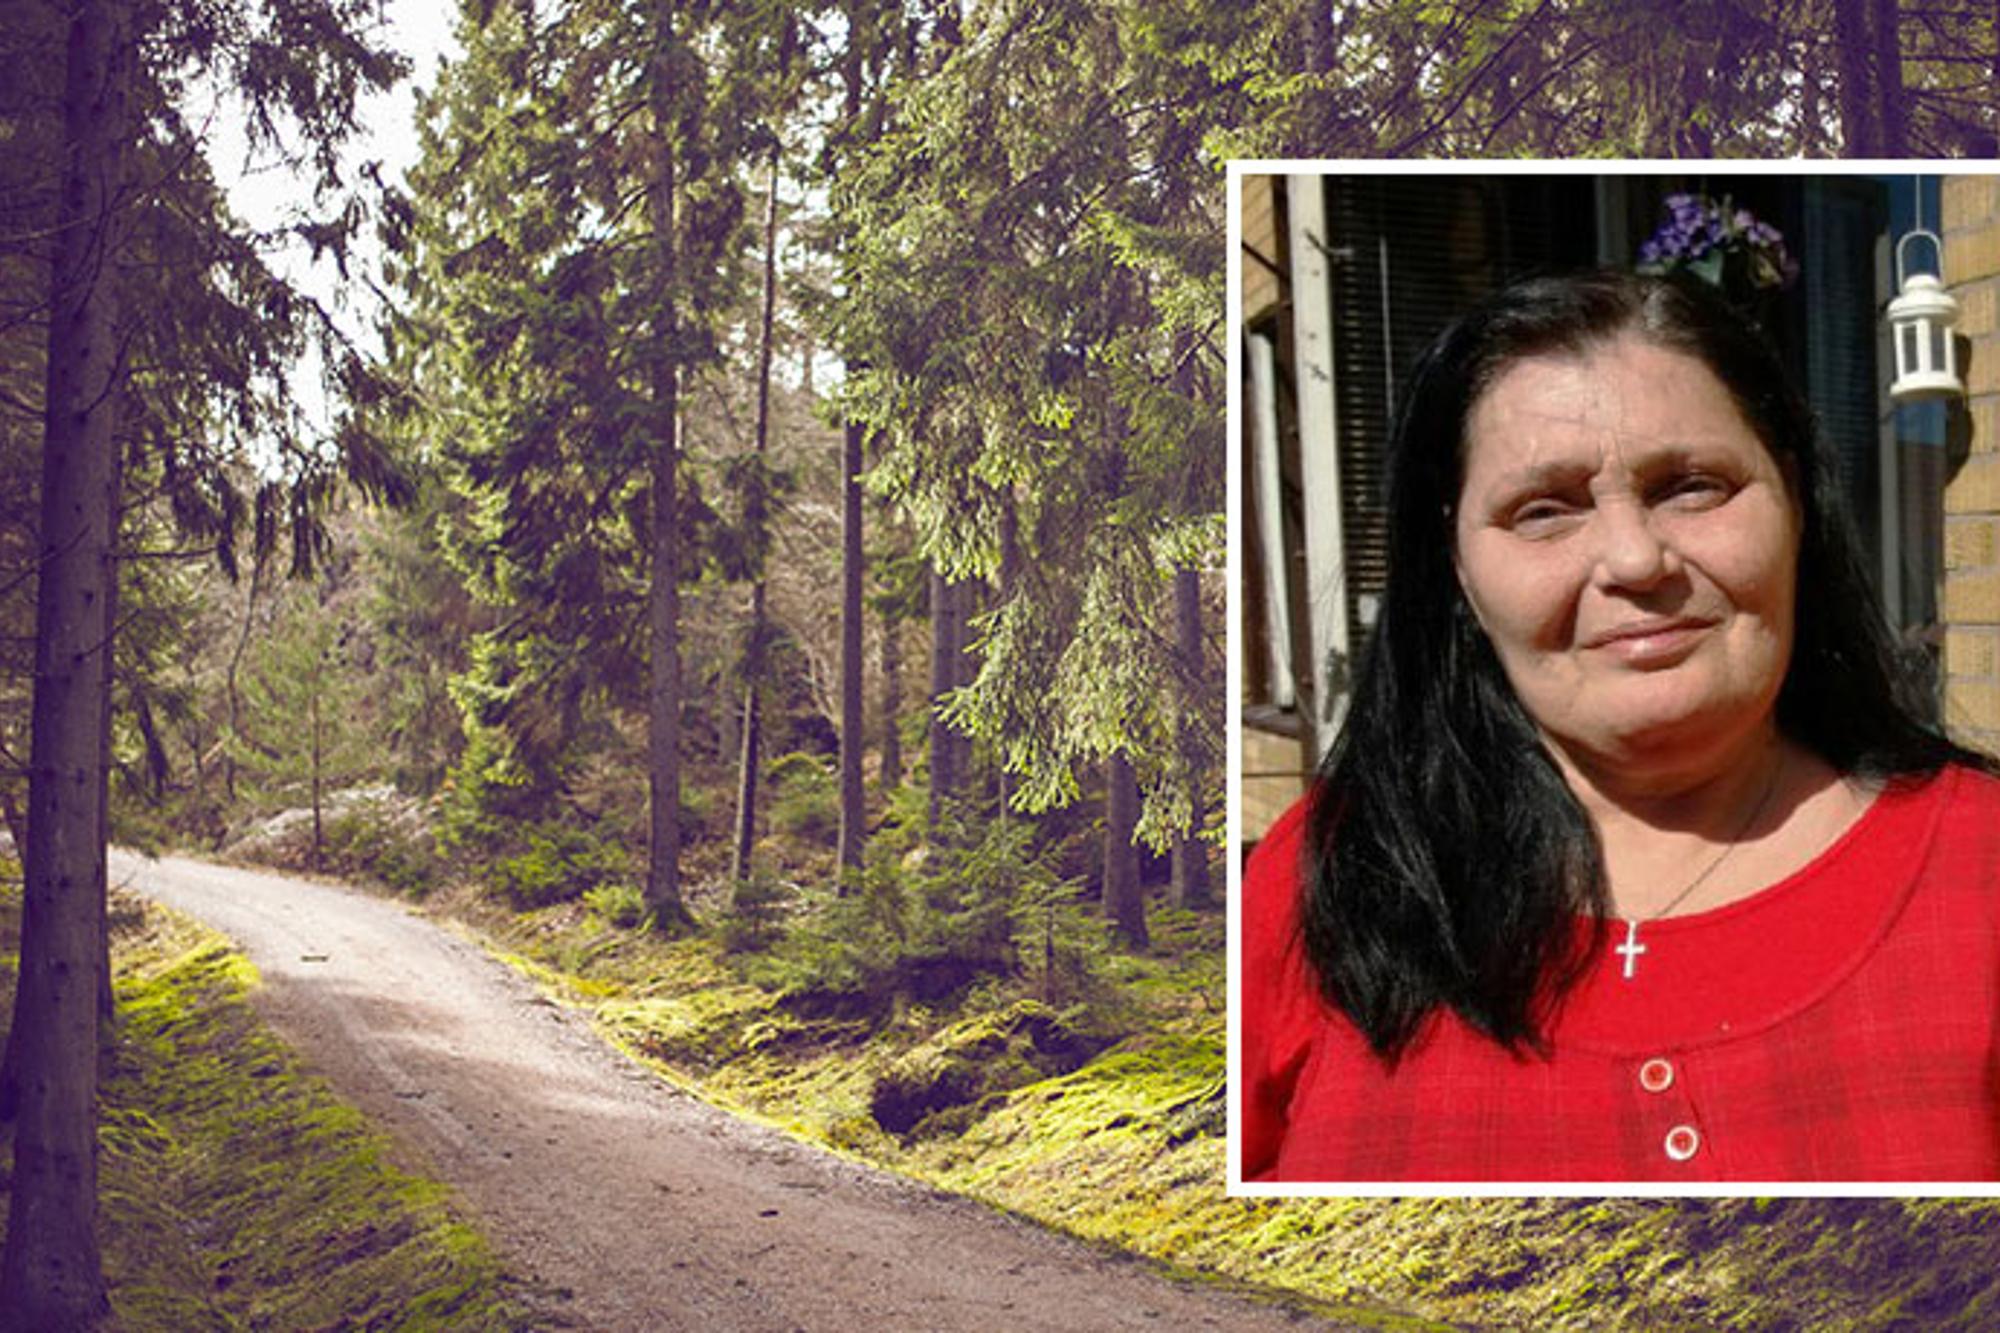 Till vänster: En stig av grus i skogen. Till höger: Porträttbild av Catharina Gustafsson.